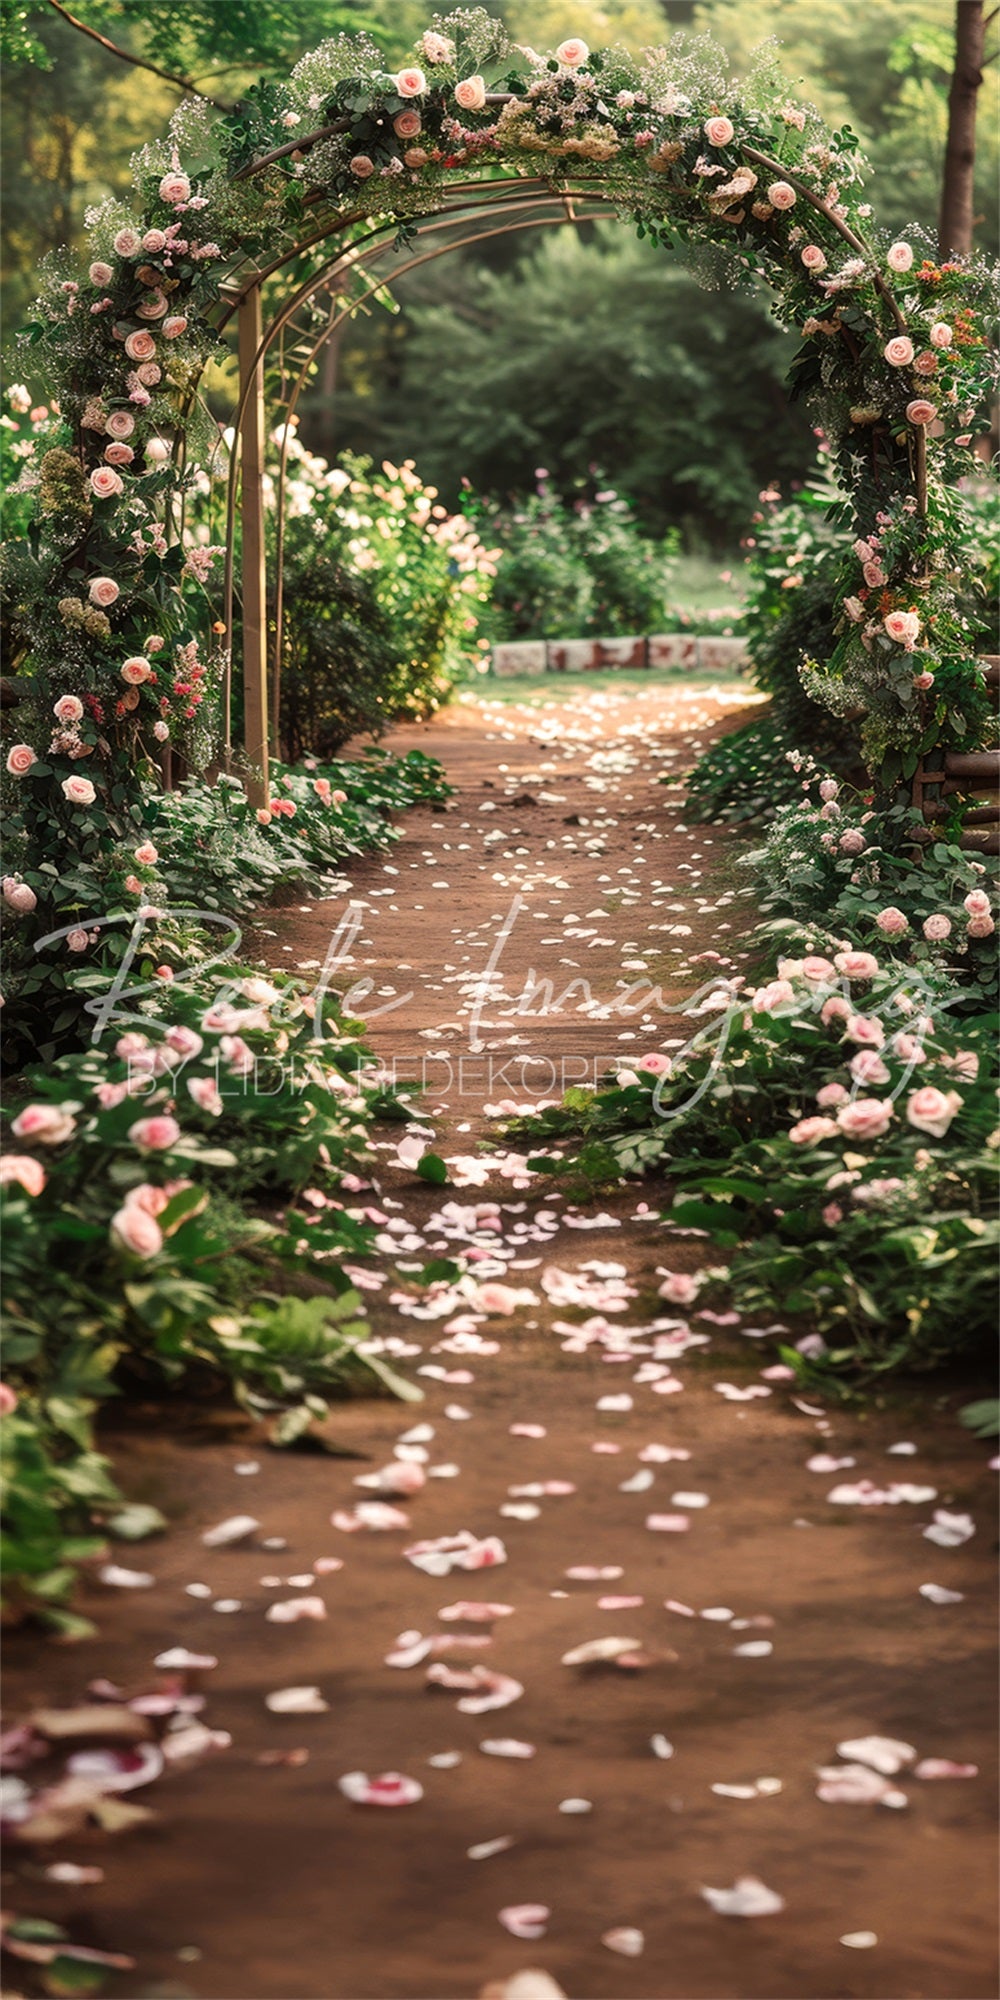 Zomerse buitenbruiloft in het bos roze bloemenboog pad achtergronddoek ontworpen door Lidia Redekopp